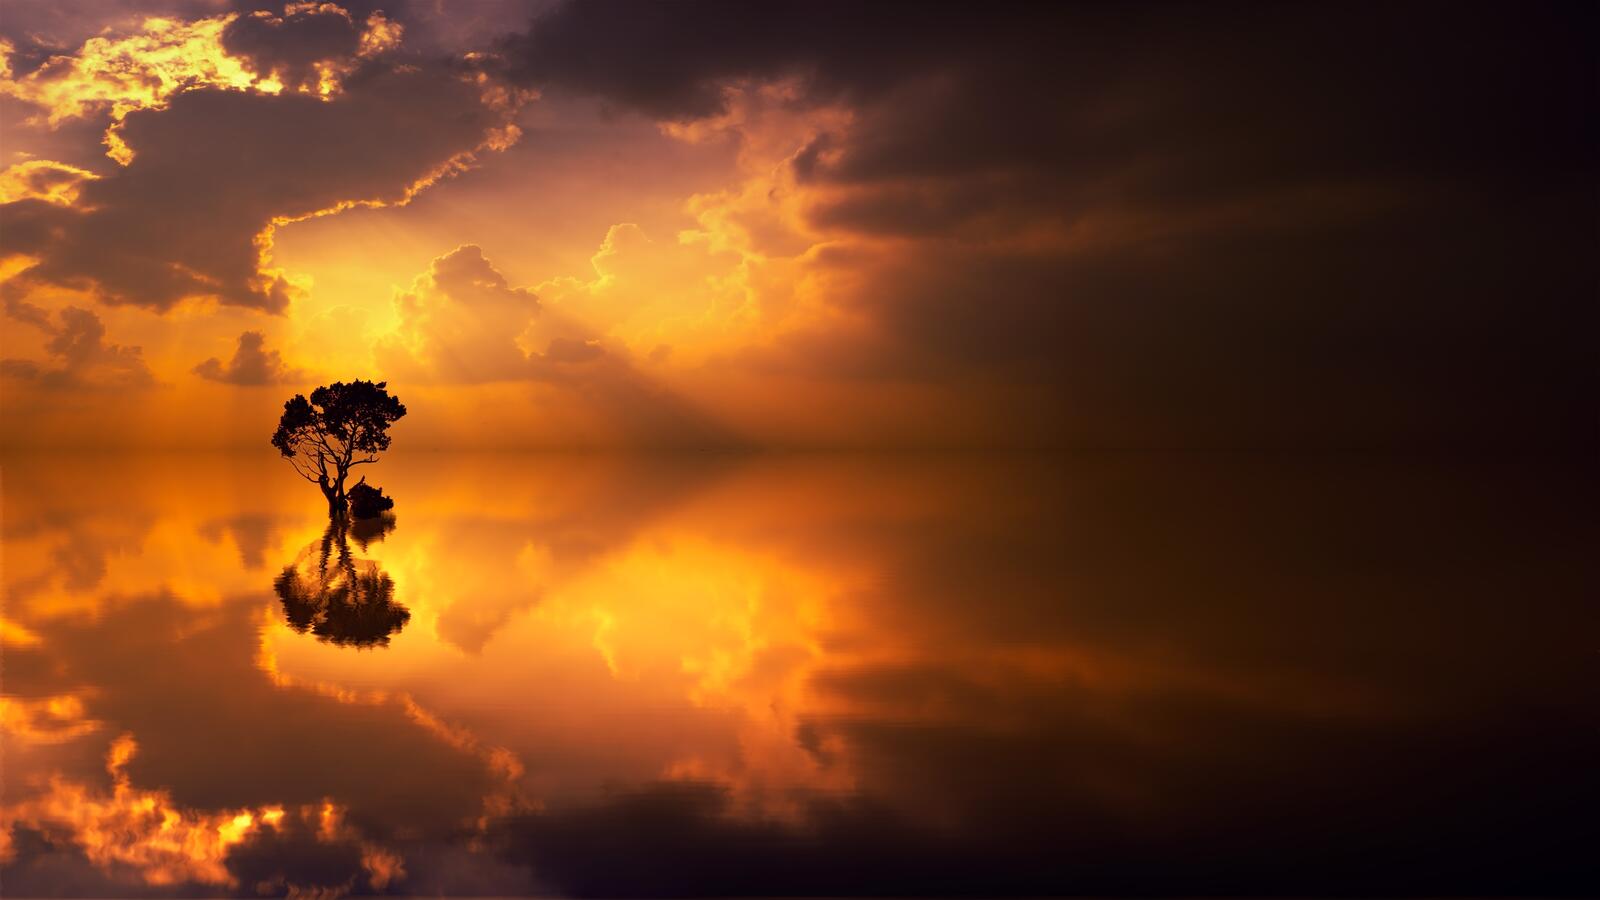 Бесплатное фото Одинокое затопленное дерево с отражением неба при закате дня